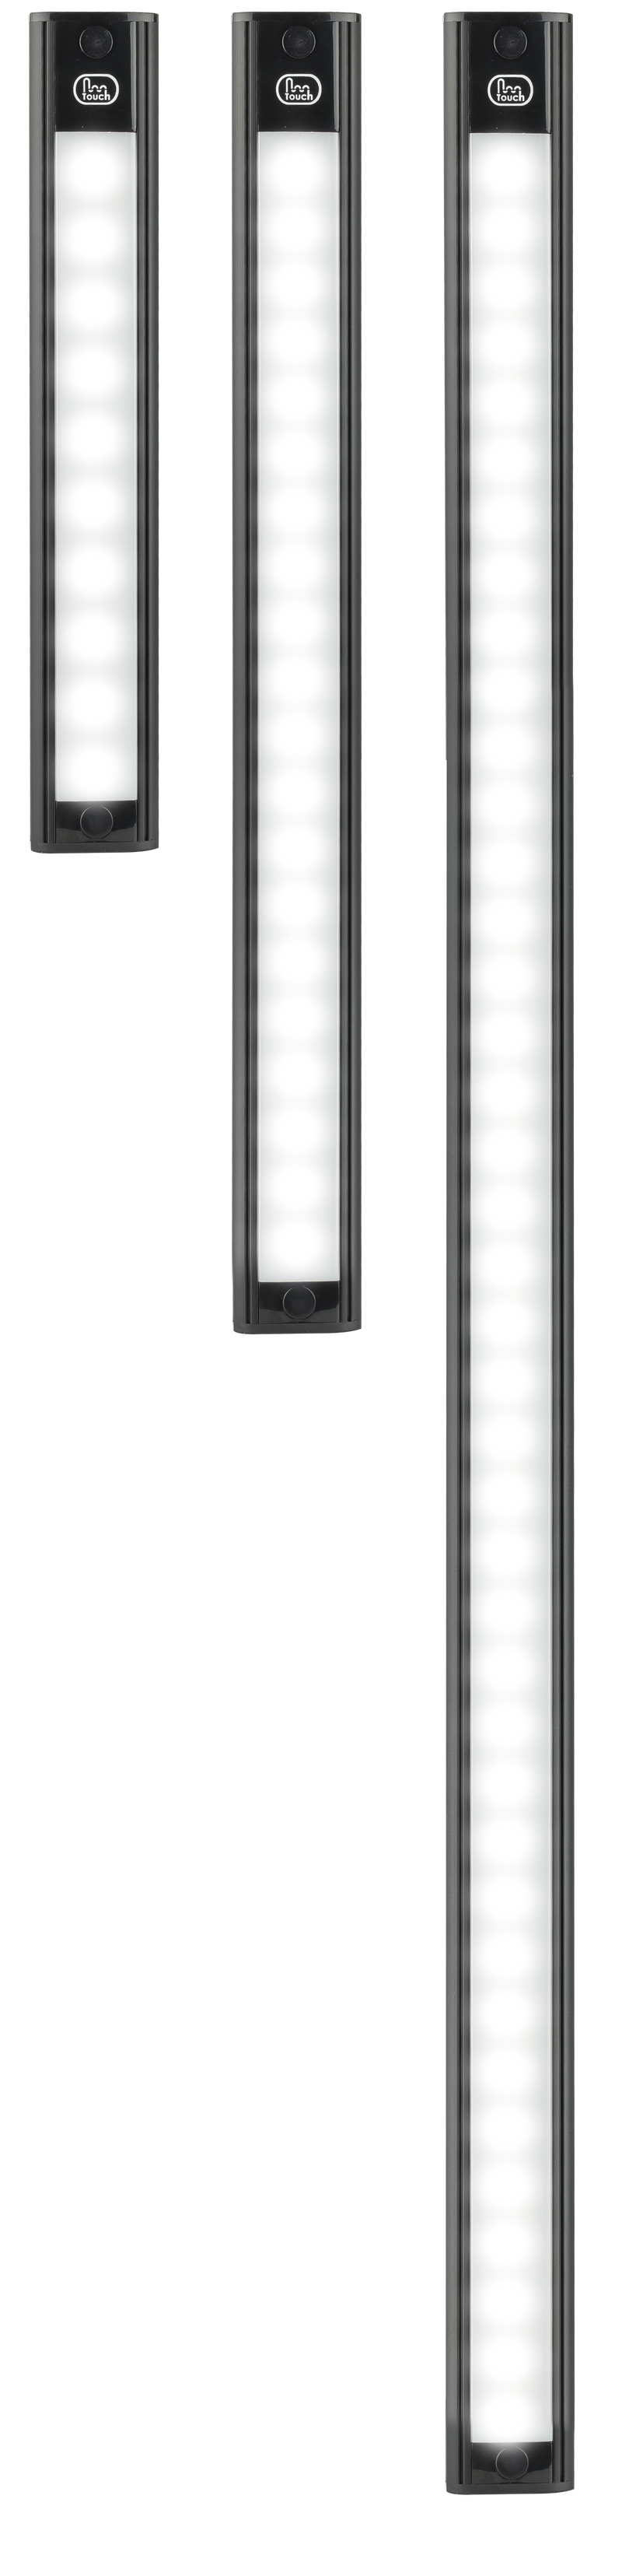 LED Autolamps 40770MCU